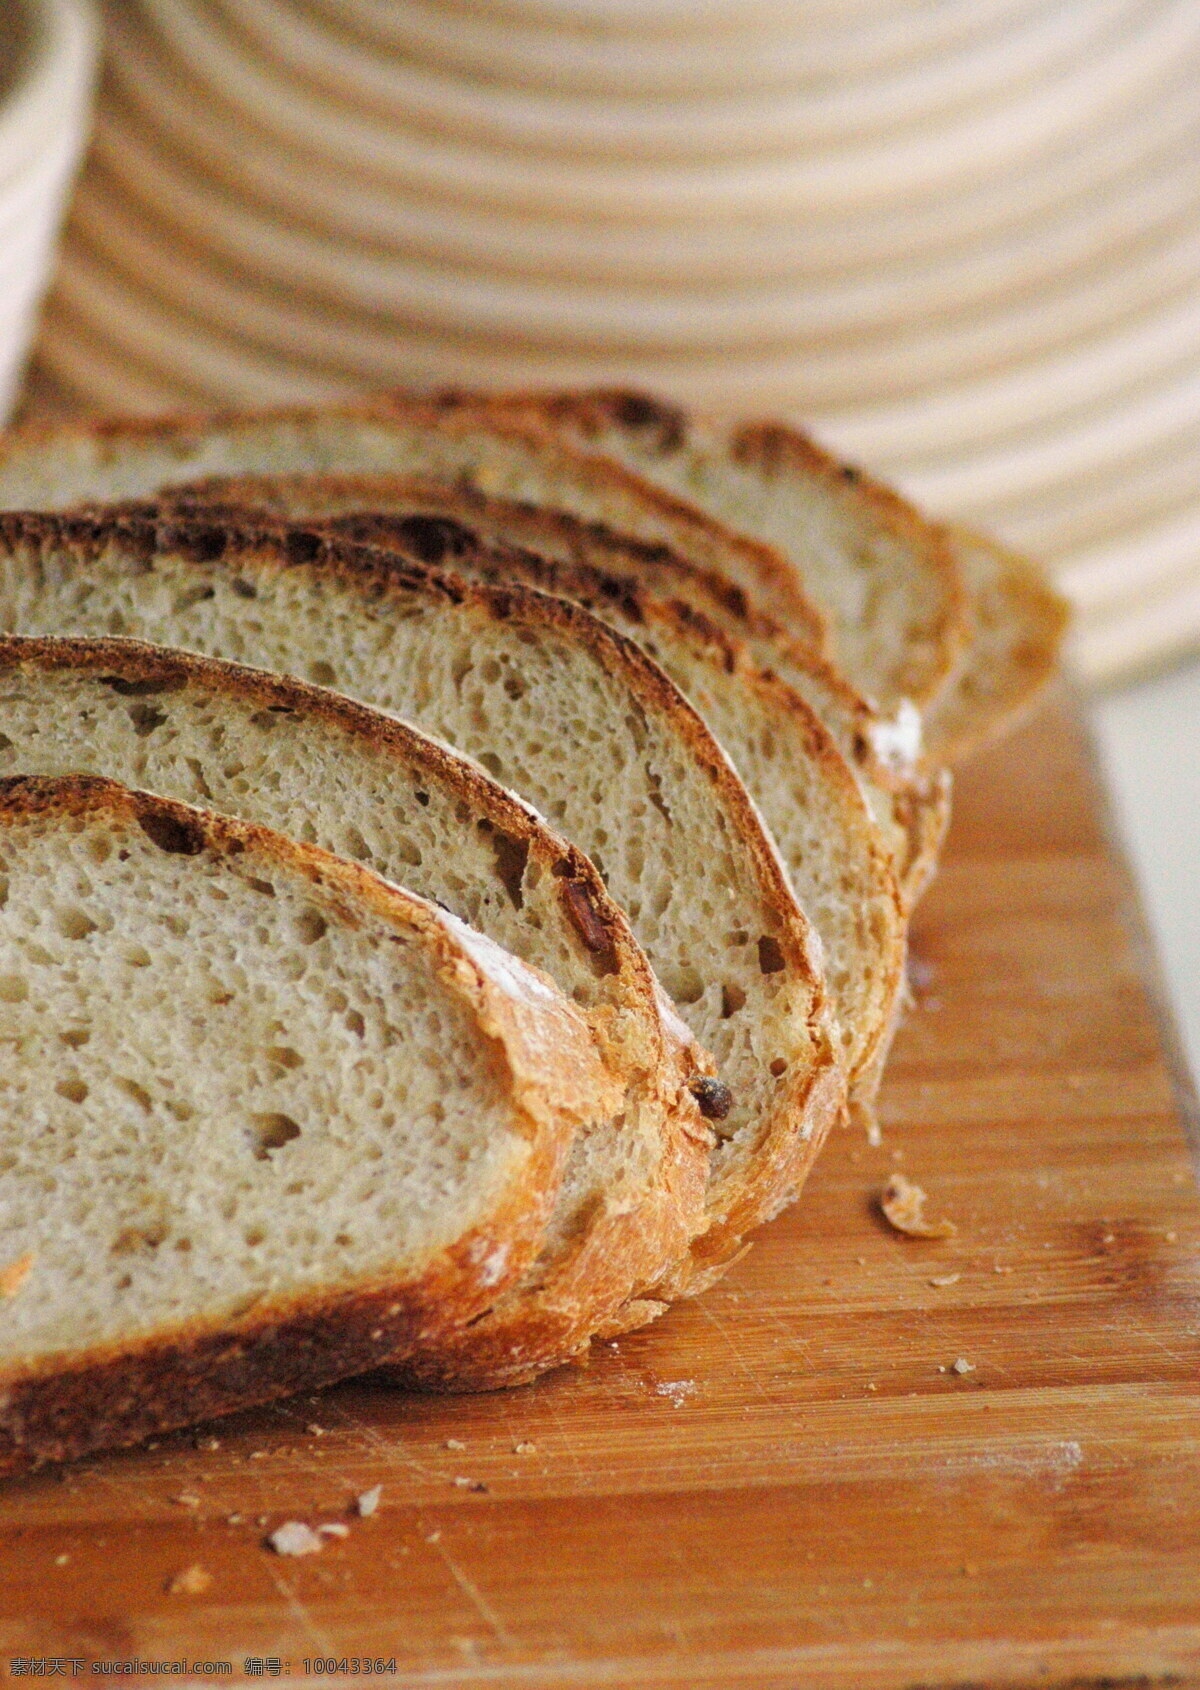 欧式面包切片 欧式面包 切片 面包切片 面包 手工面包 餐饮美食 西餐美食